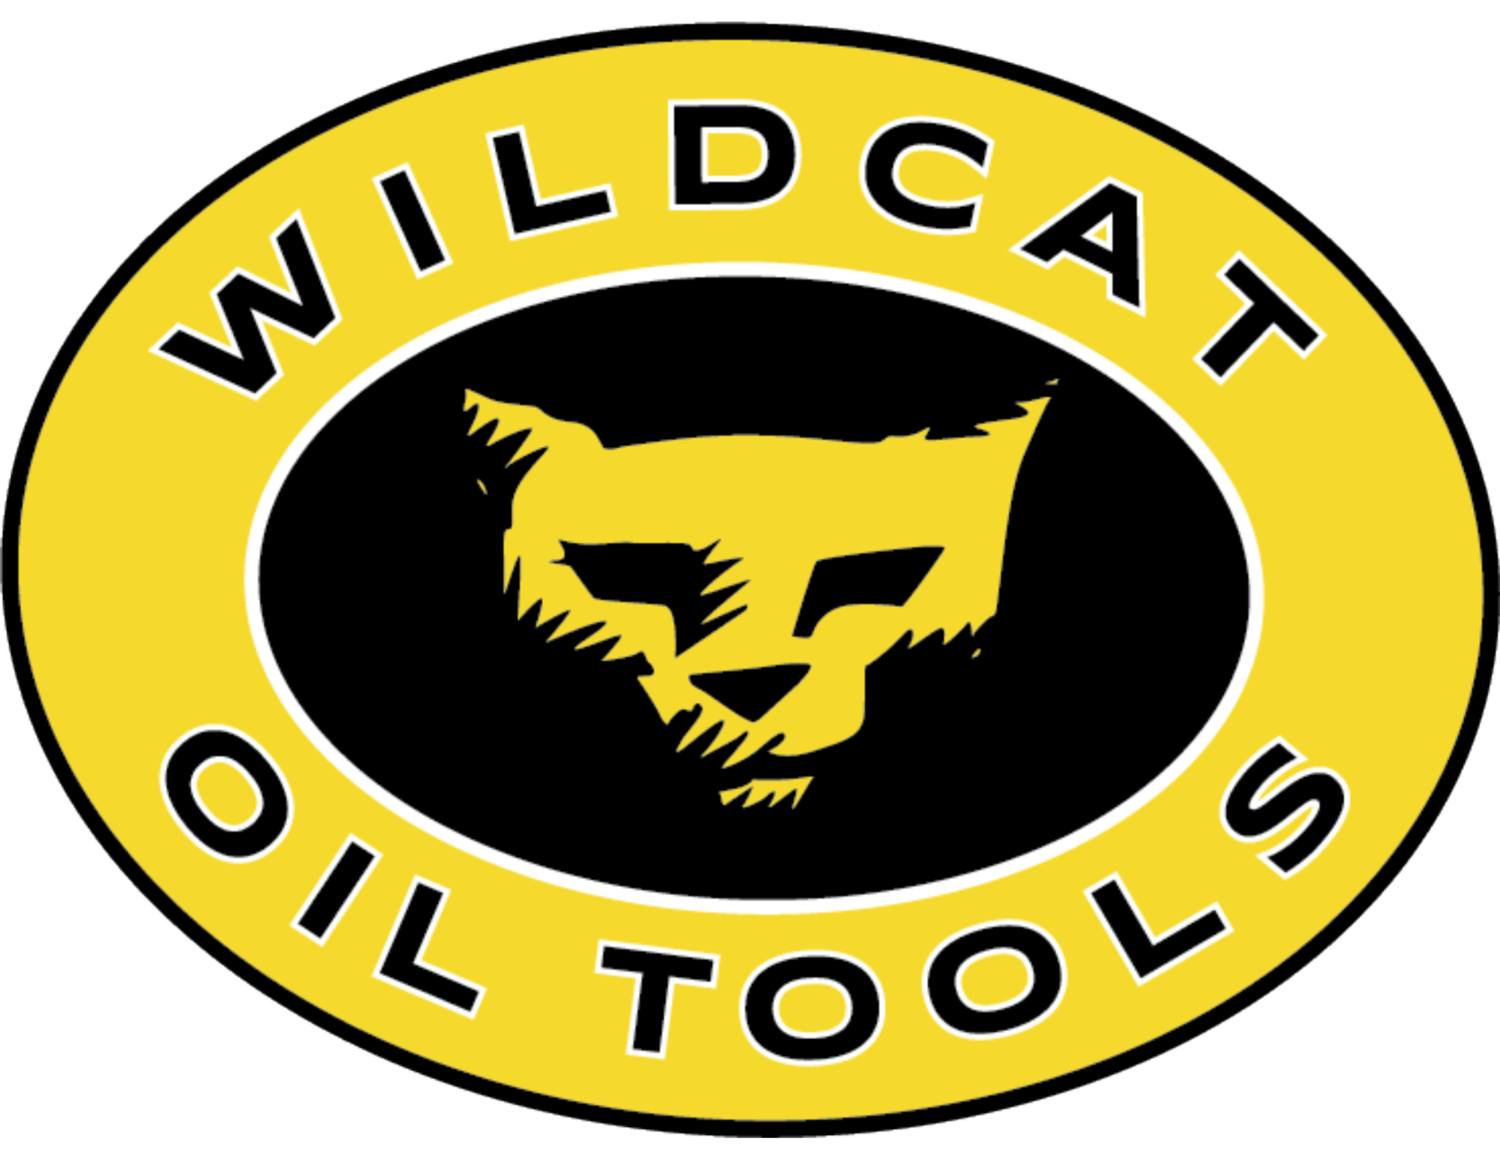 Wildcat Oil Tools LLC